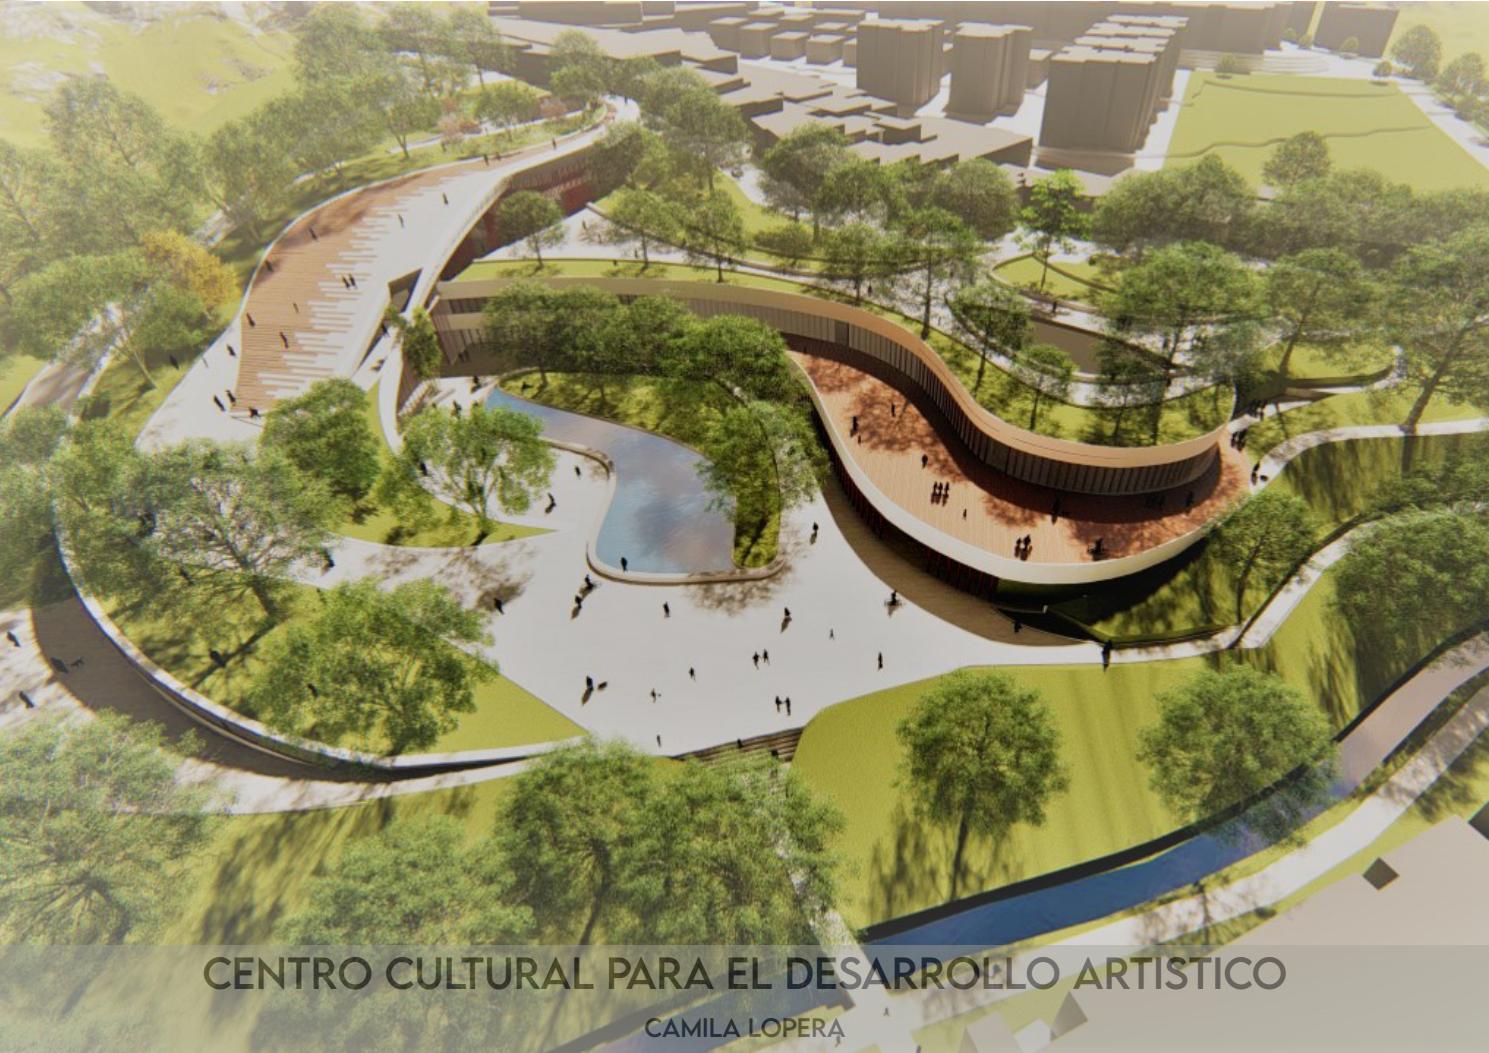  Asegurada la construcción del Centro Cultural. Ya presentaron estudios y diseños del proyecto